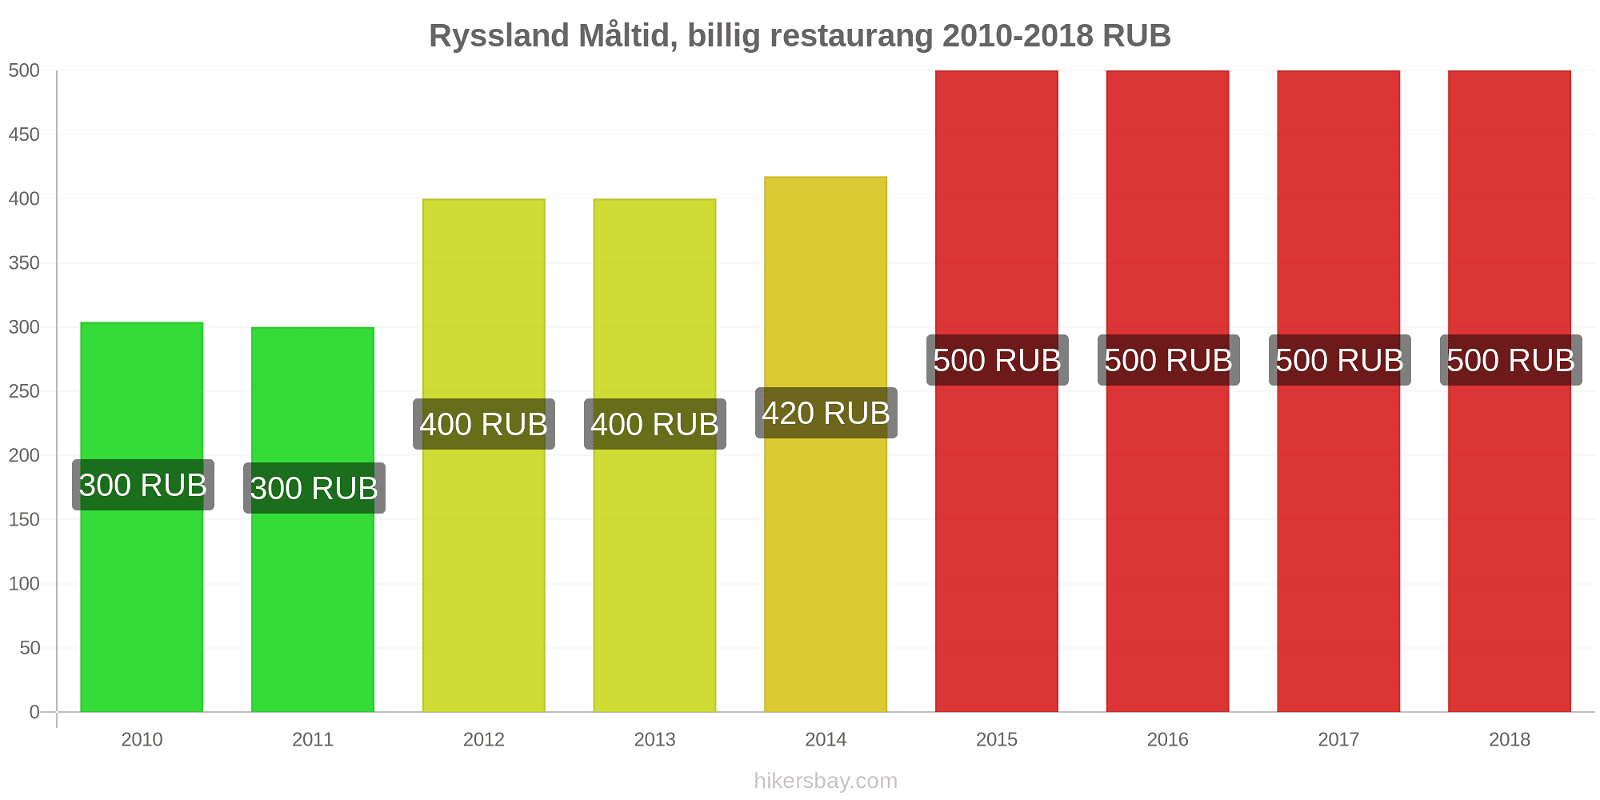 Ryssland prisändringar Måltid i en billig restaurang hikersbay.com